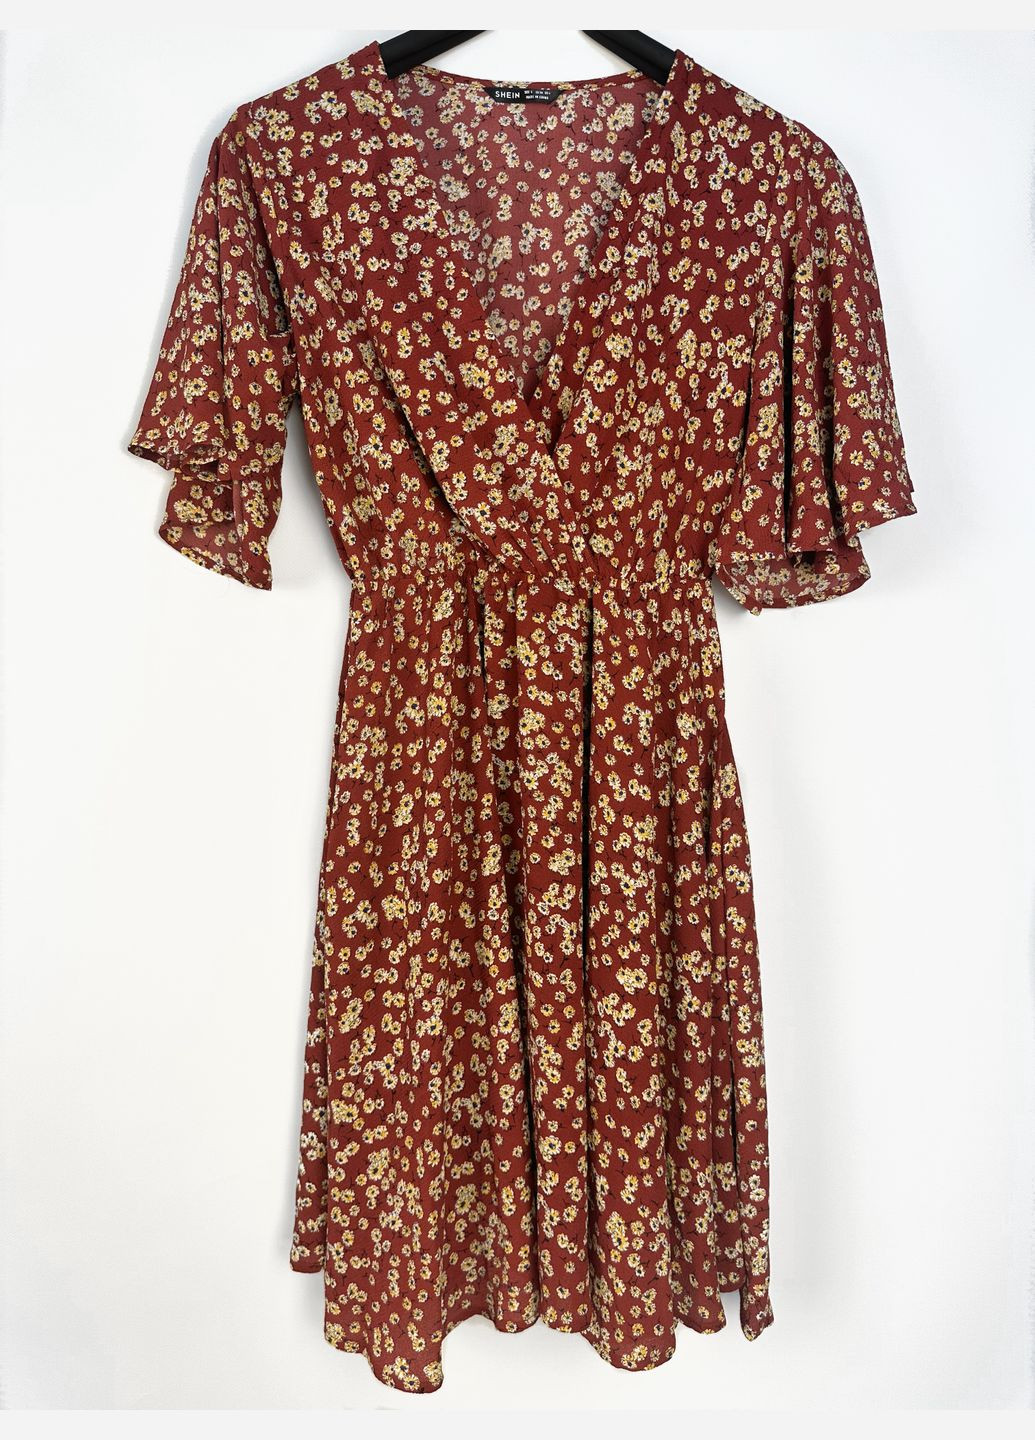 Комбинированное платье красная в цветочный принт btg-0017 SHEIN